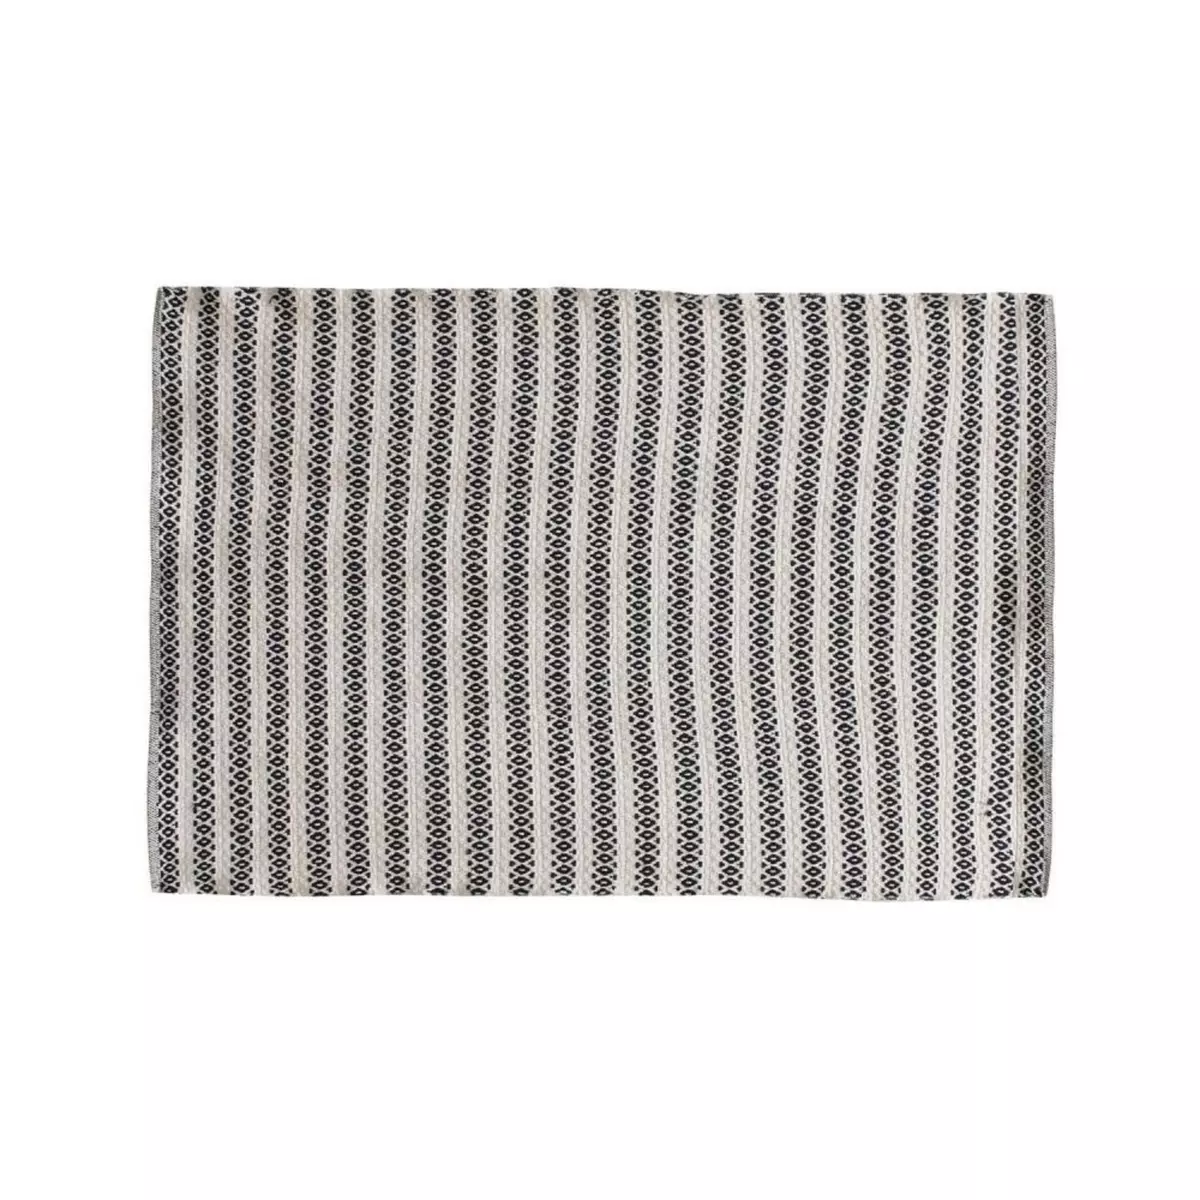 The Home Deco Factory Tapis rectangle beige motifs noir 120x170 cm